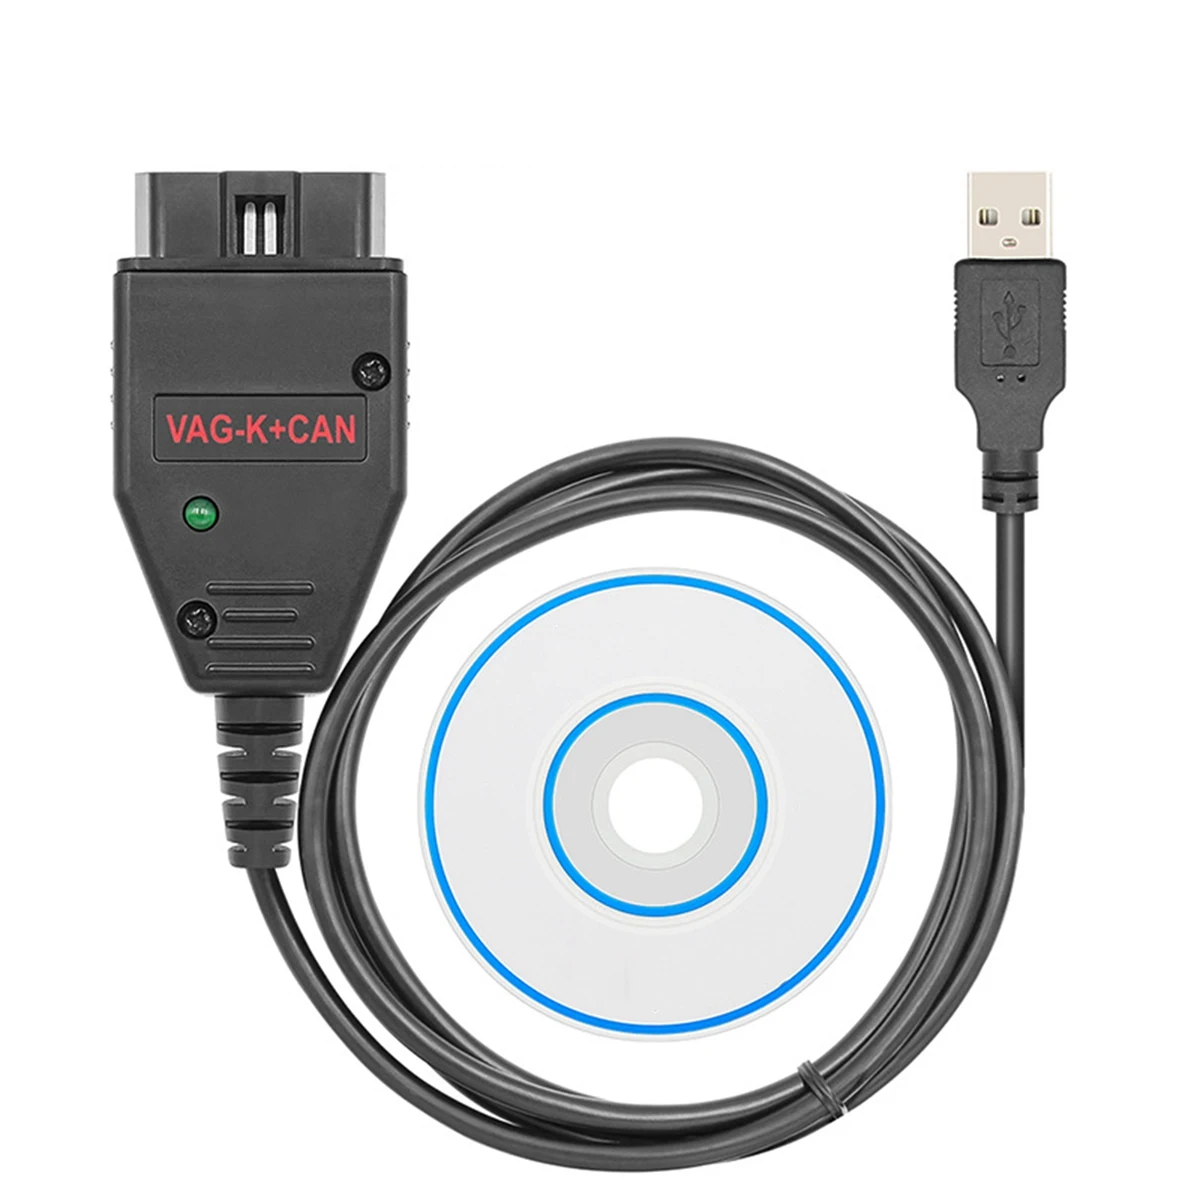 

VAG K+ CAN Commander 1.4 FTDI Chip OBD2 Scanner USB Cable Diagnostic Tool for VW/Audi/Skoda for VAG K-Line